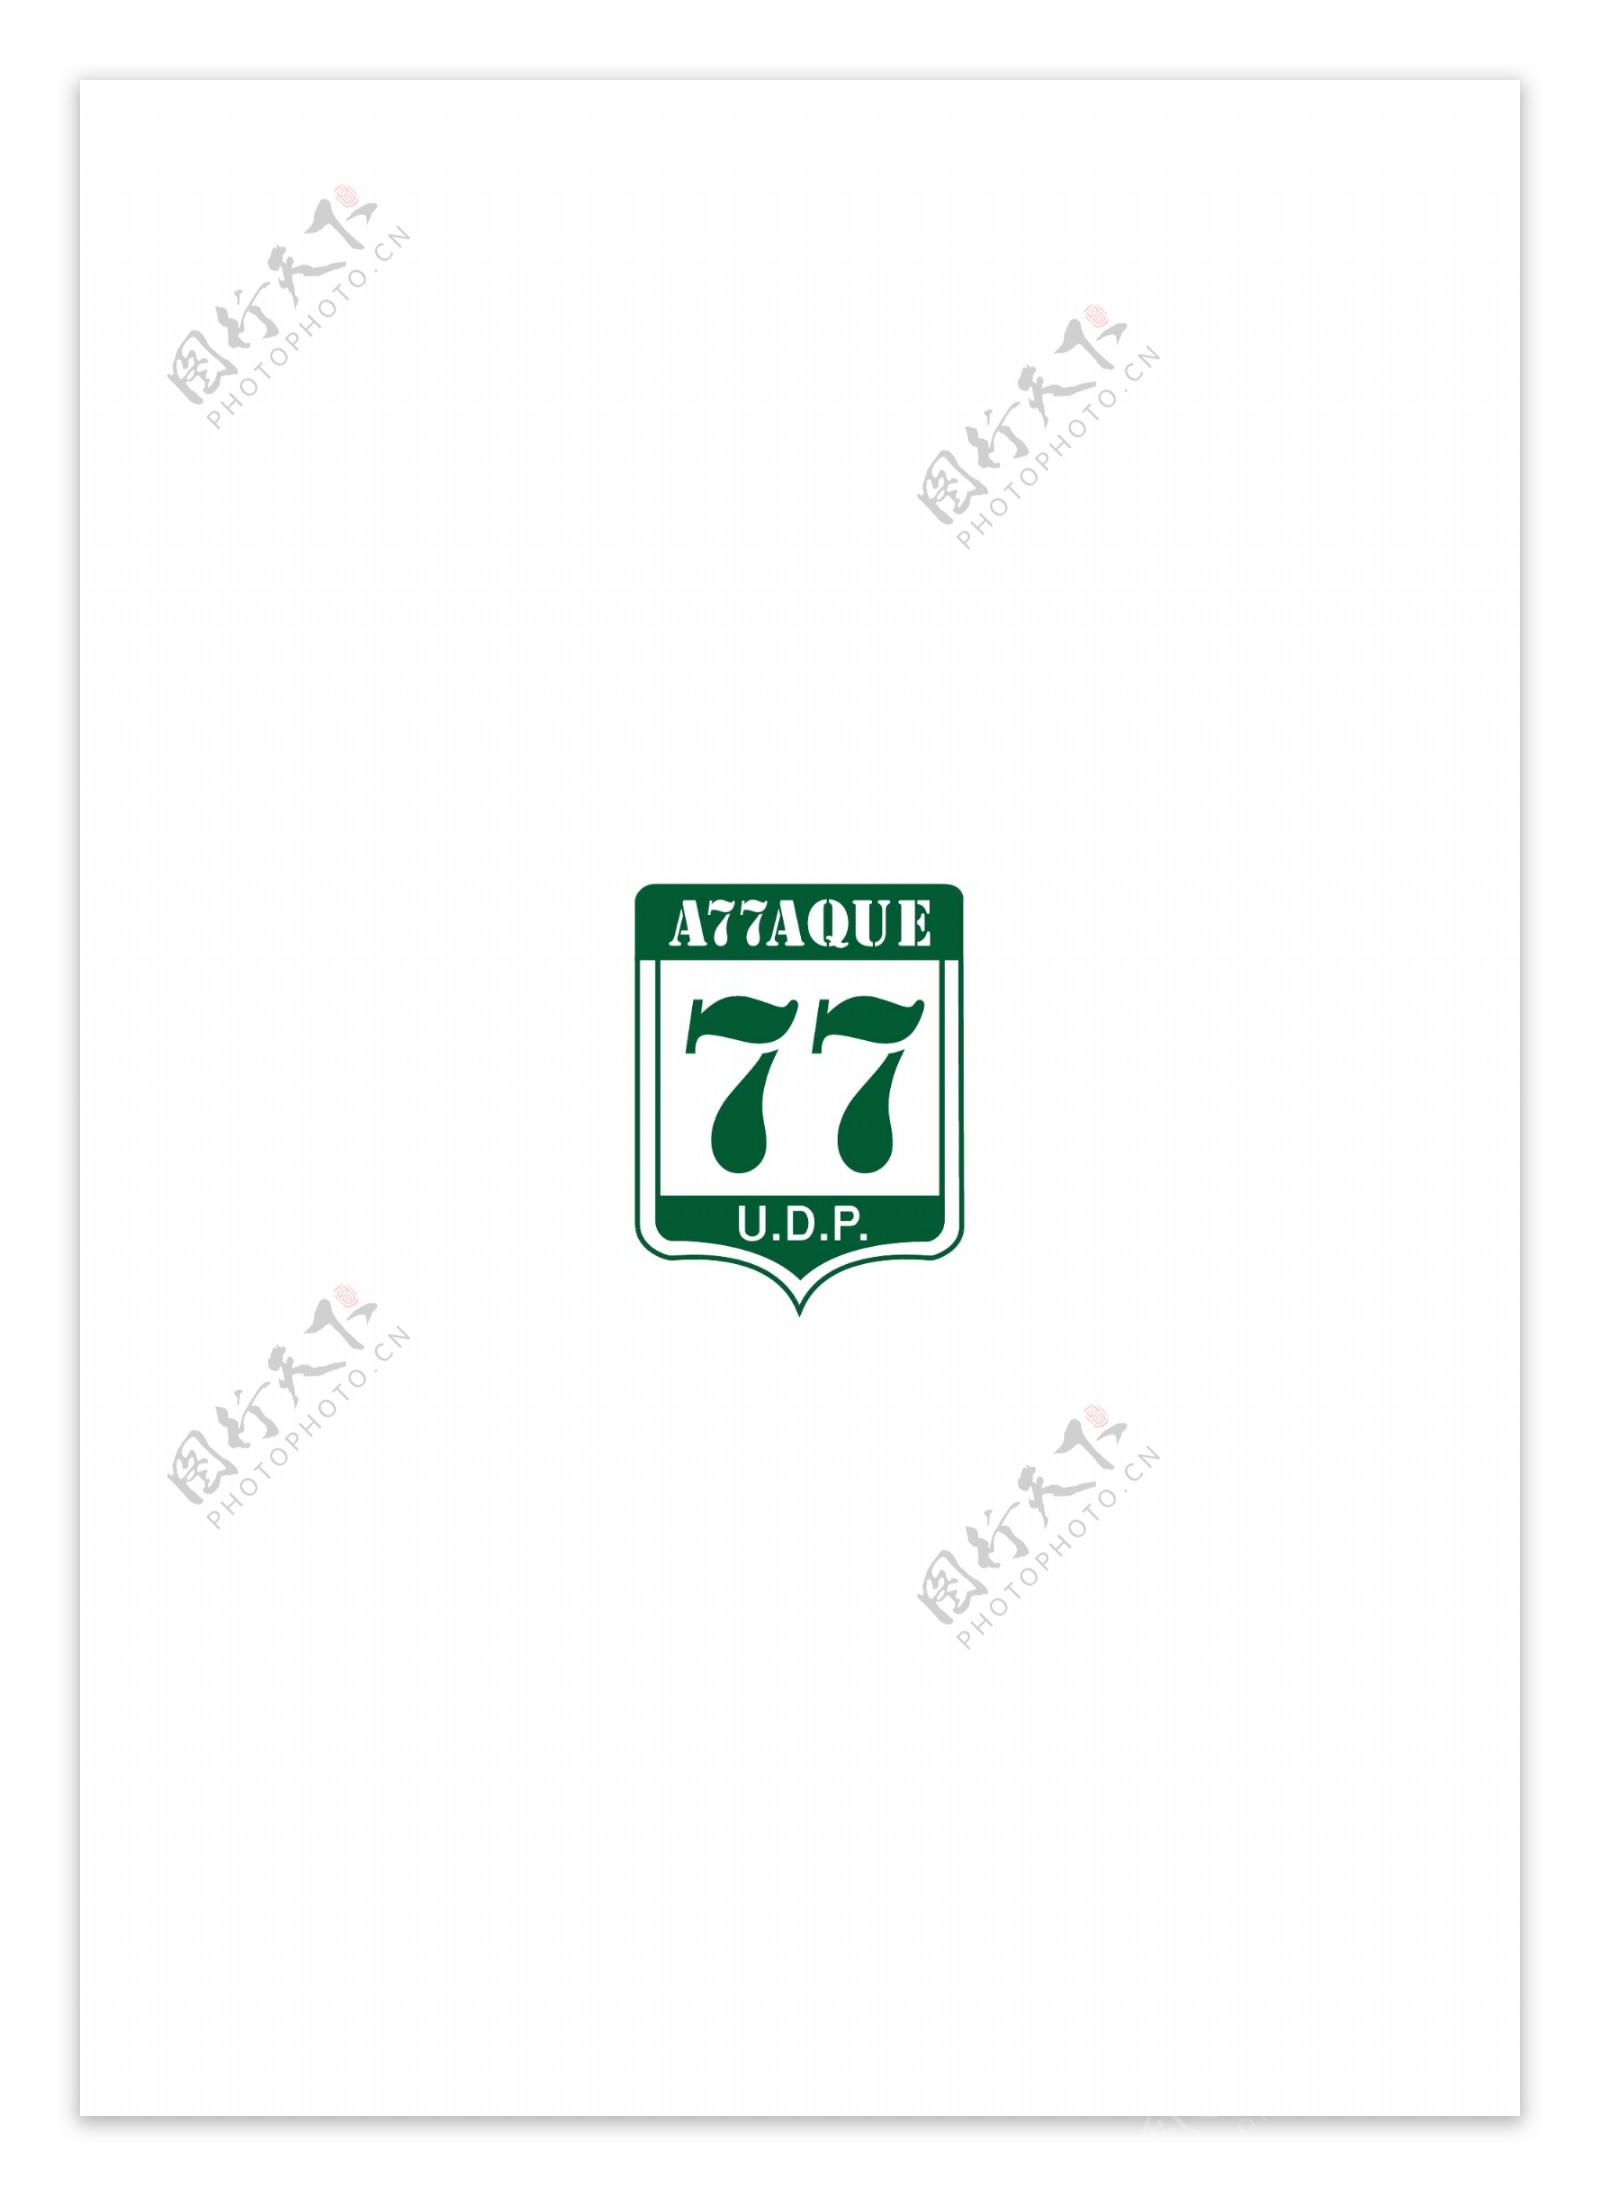 Attaque77logo设计欣赏Attaque77唱片公司LOGO下载标志设计欣赏